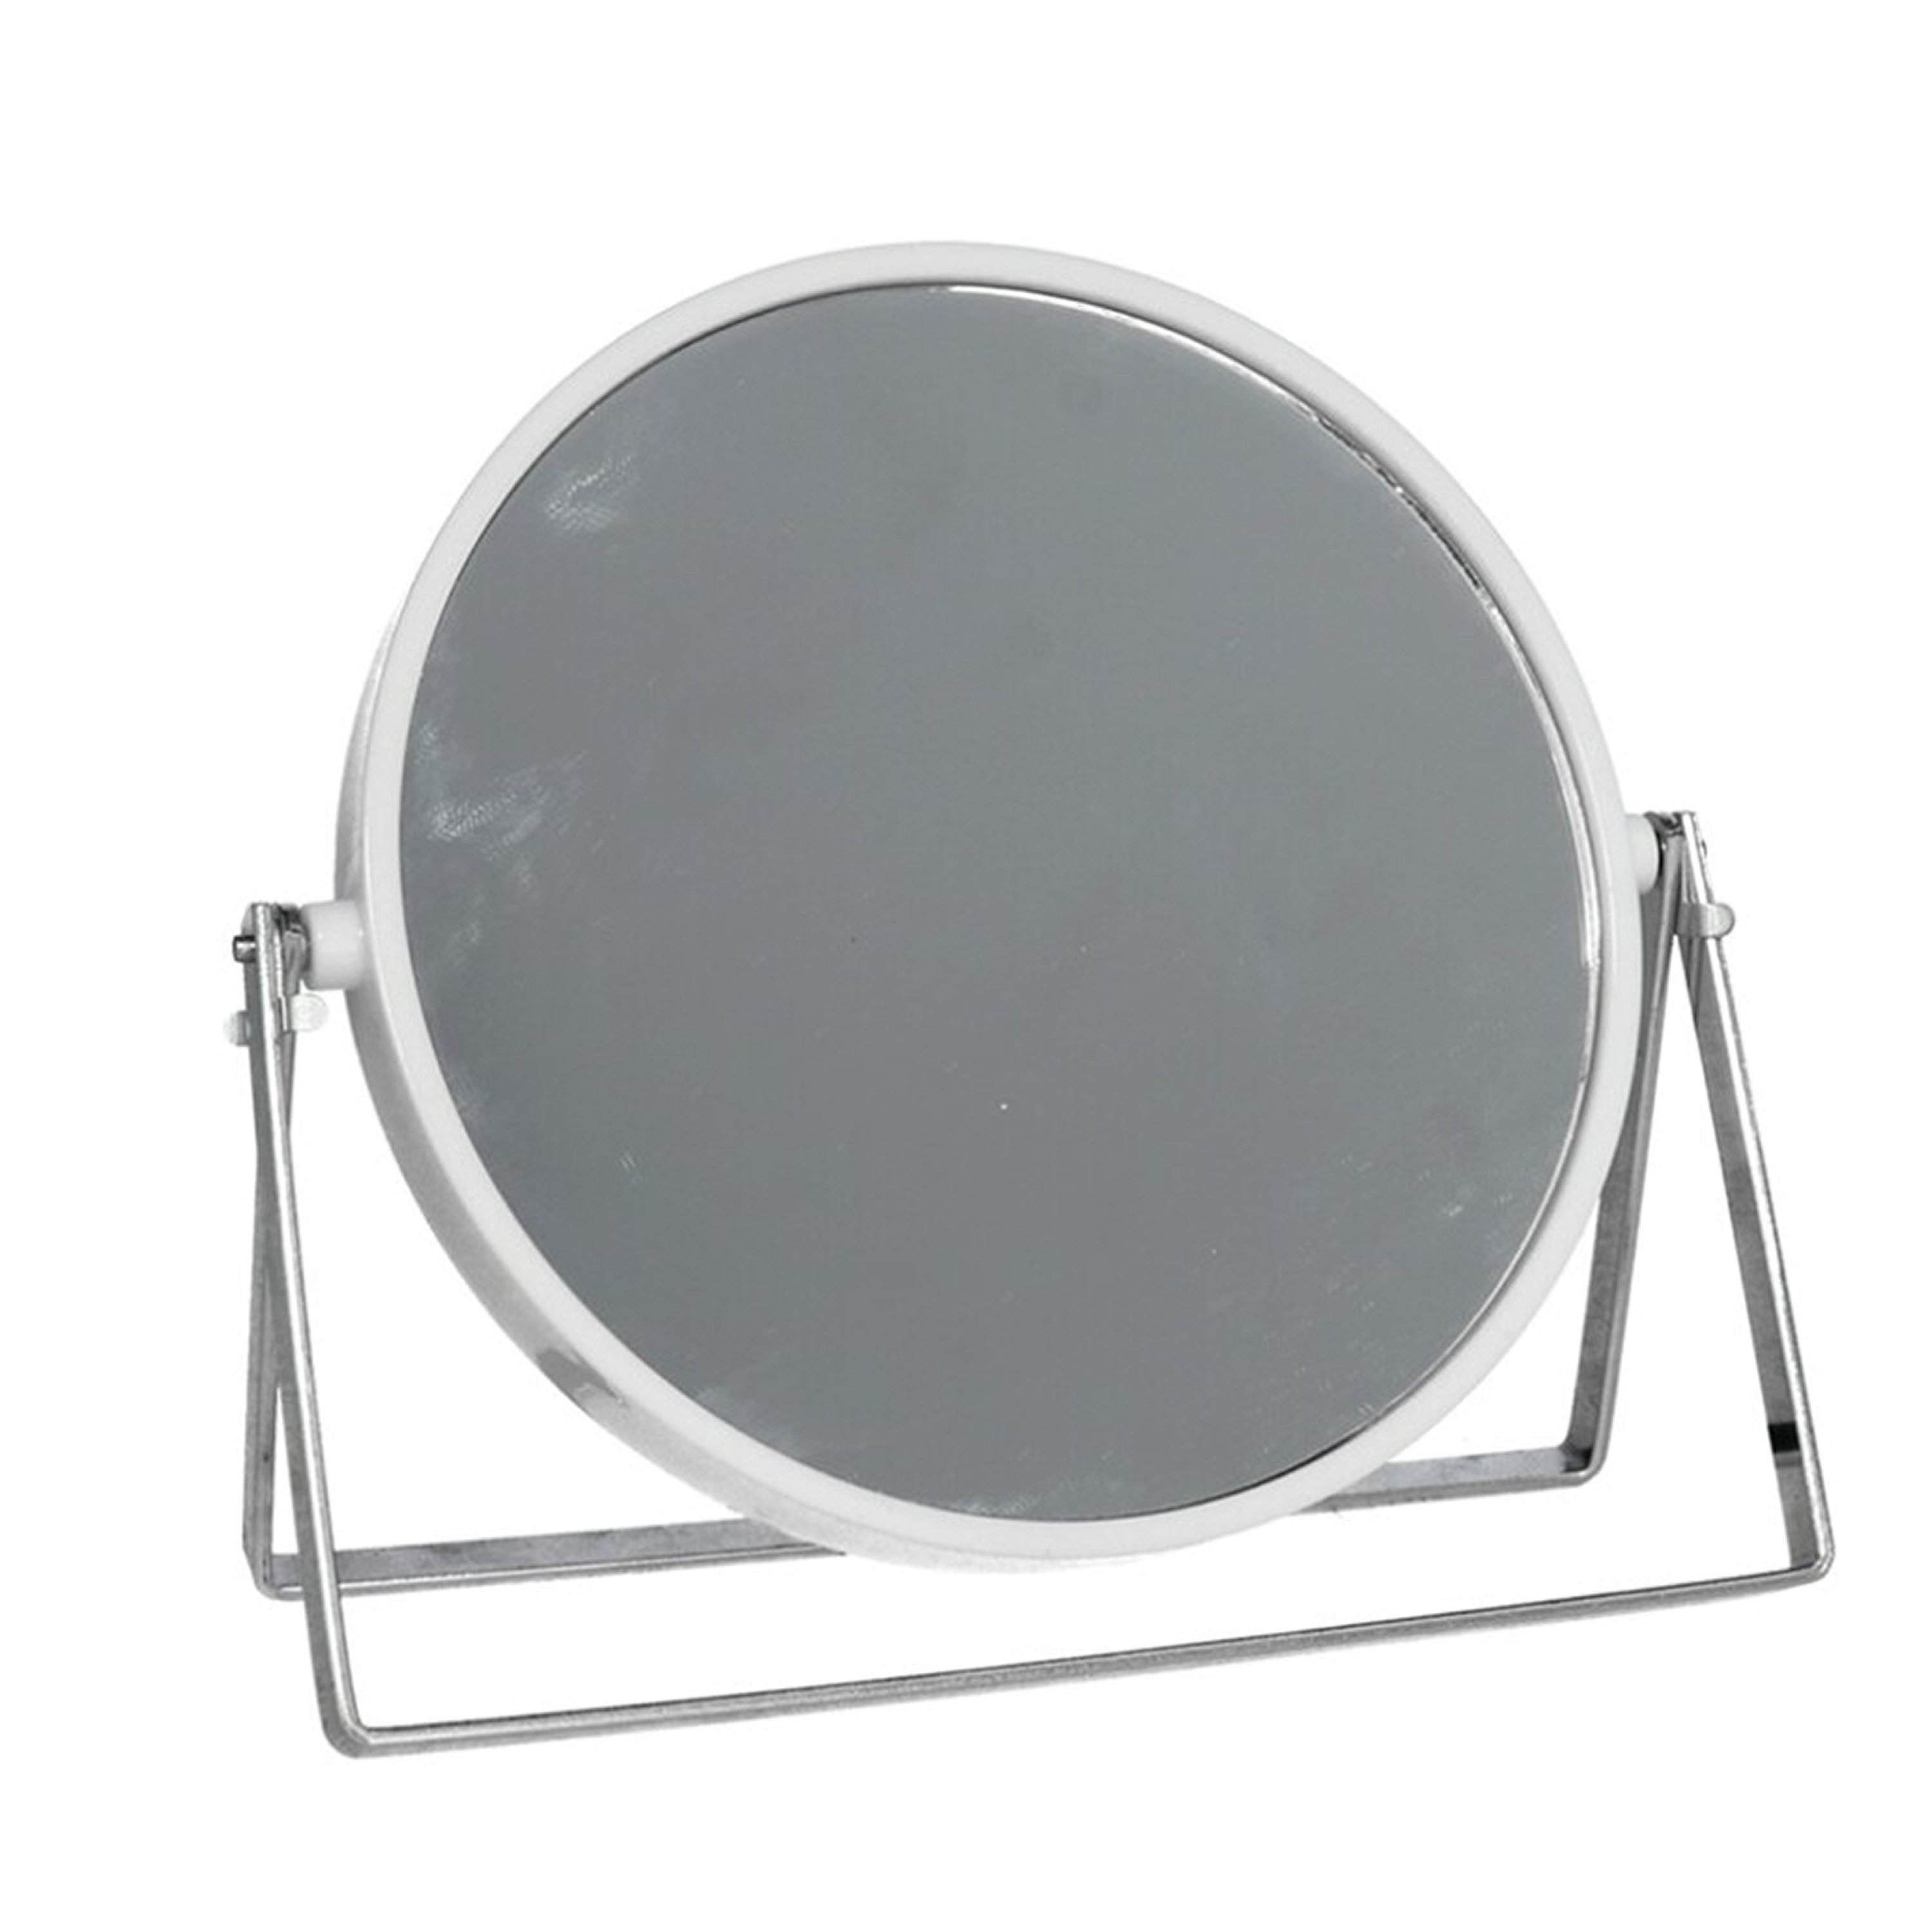 Gerimport Make-up spiegel 2-zijdig gebruik - vergrotend - dia 18 cm - wit/zilver -